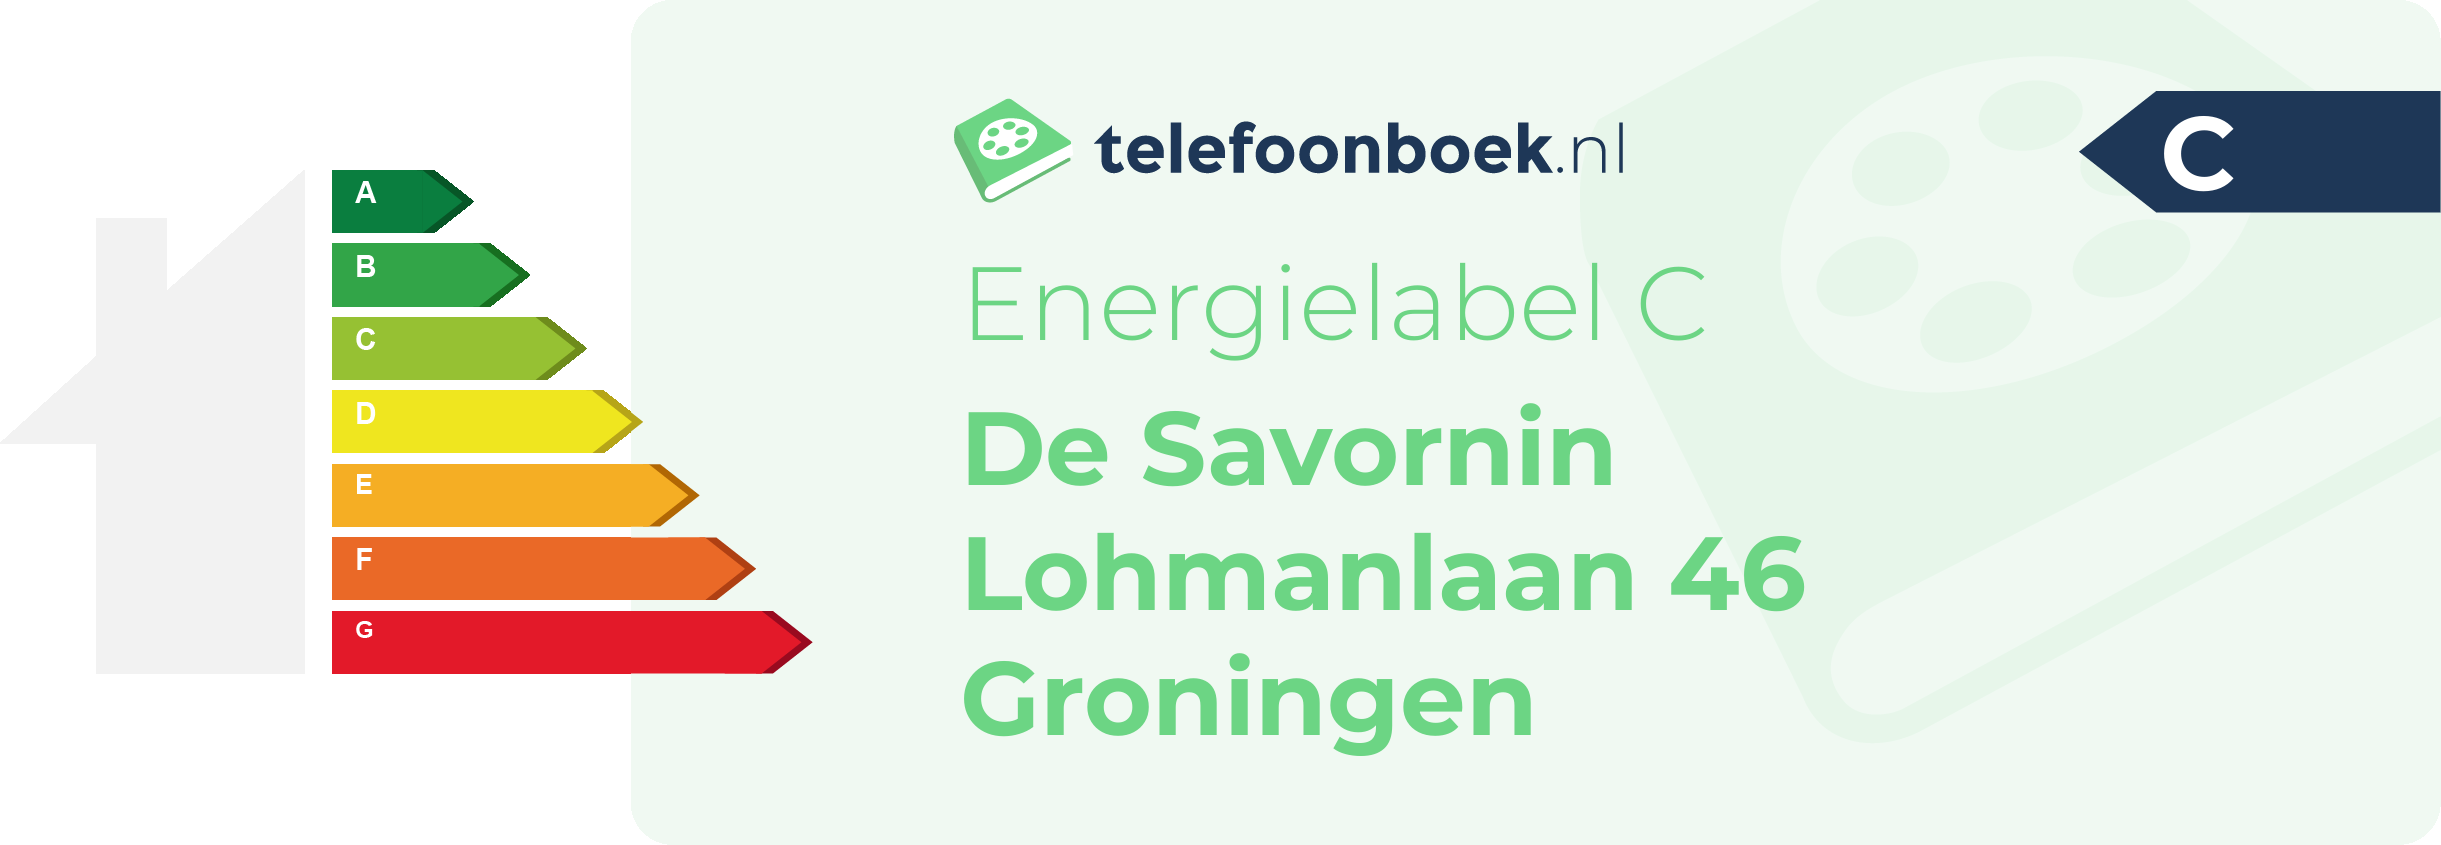 Energielabel De Savornin Lohmanlaan 46 Groningen